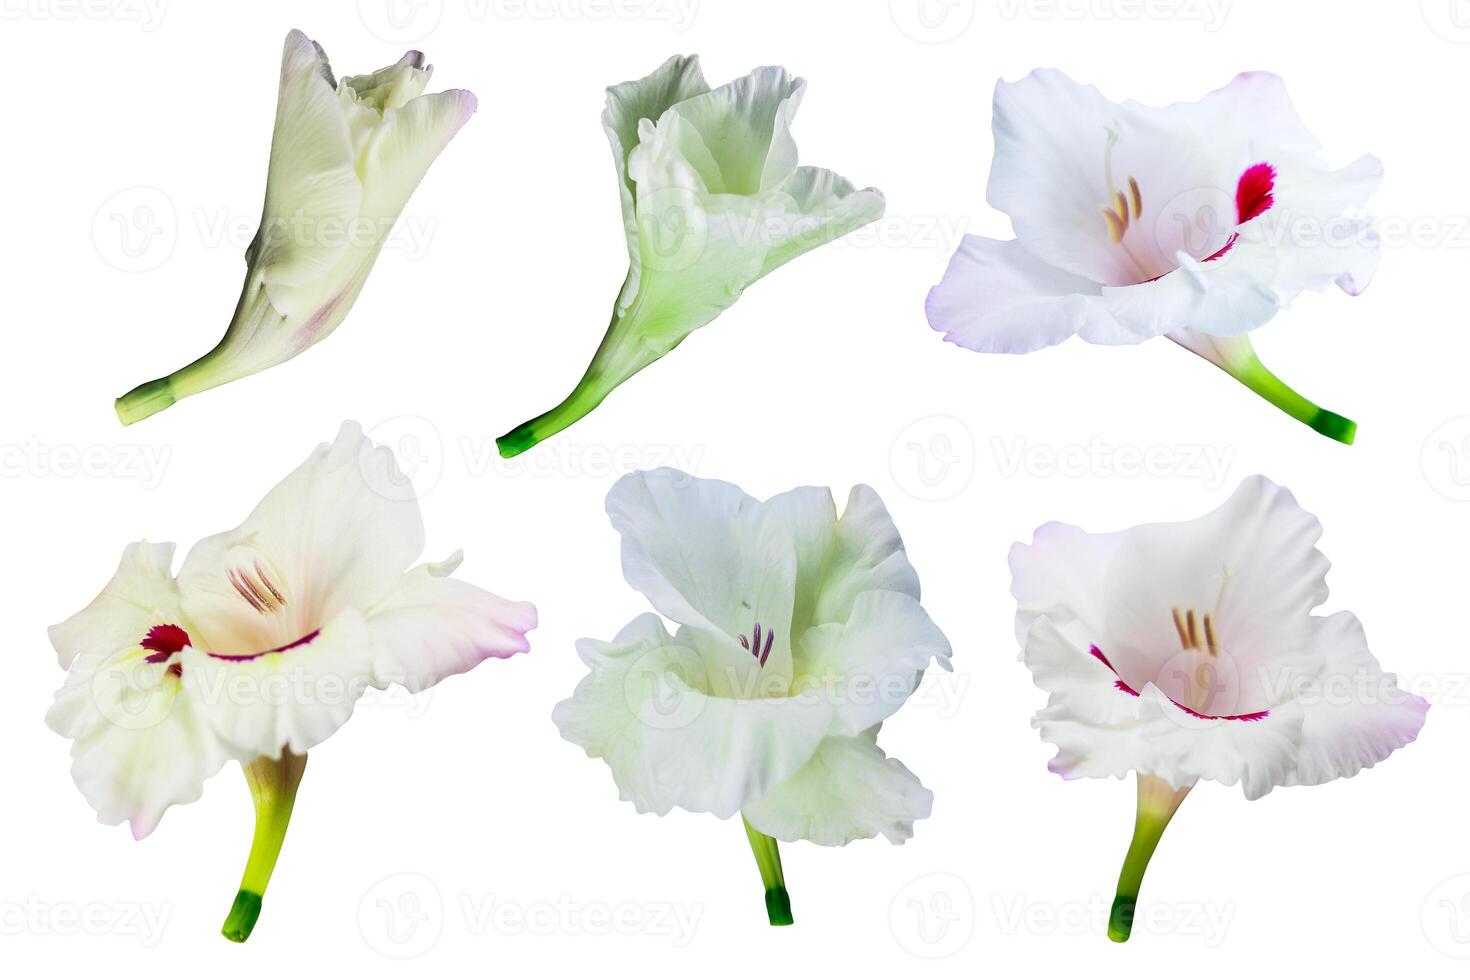 gladiolus blomma isolerat på en vit bakgrund, klippning väg inkluderad för lätt urval foto